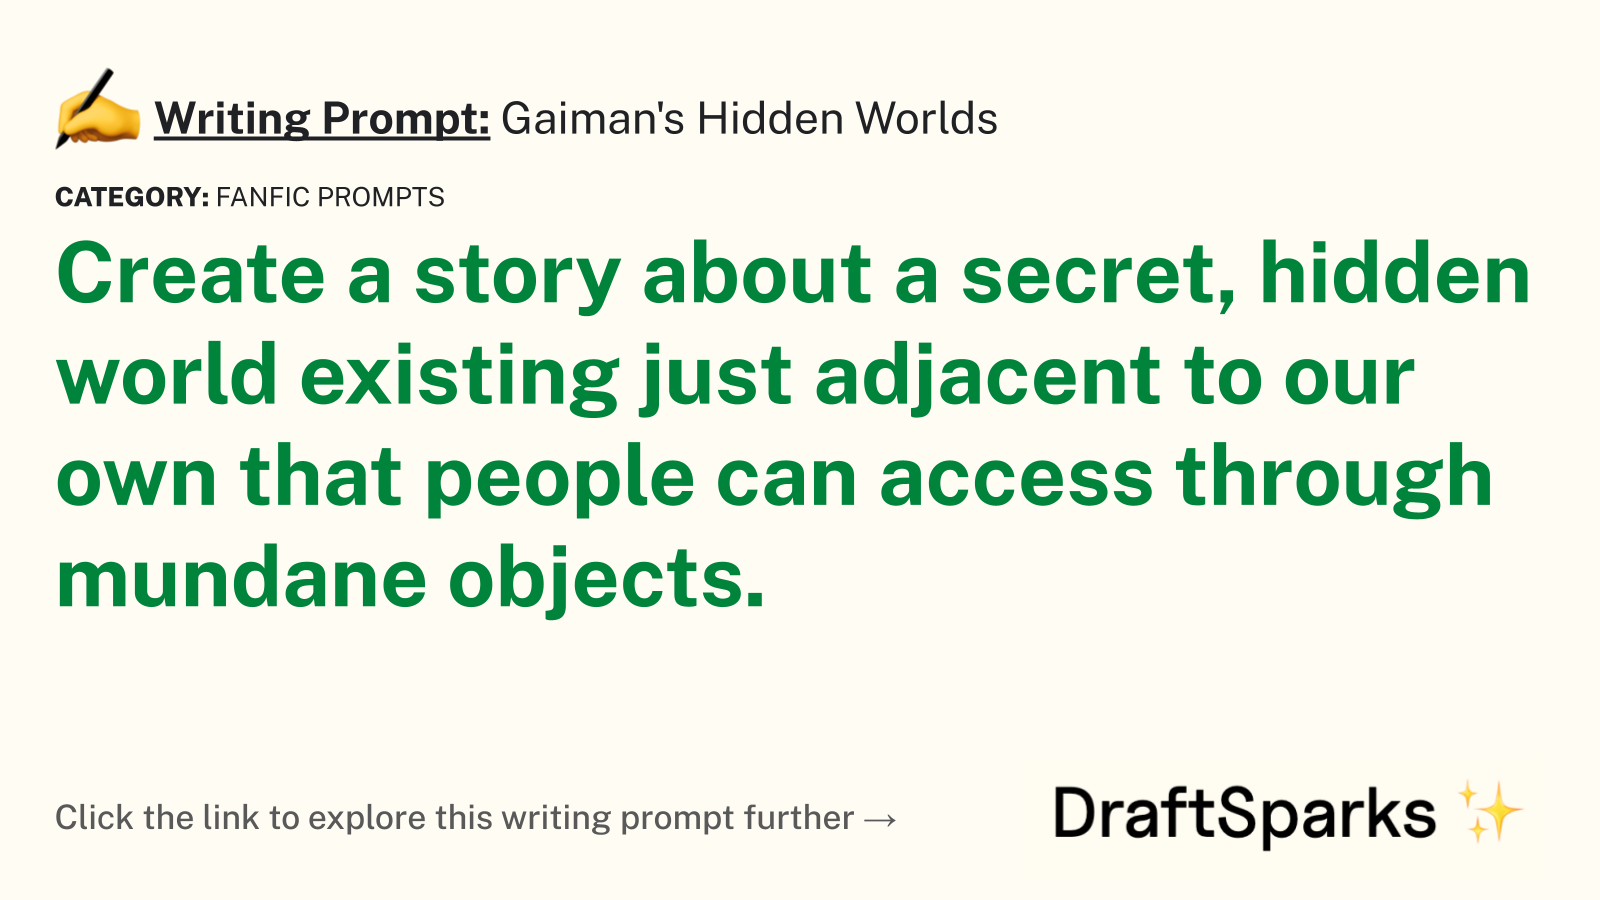 Gaiman’s Hidden Worlds